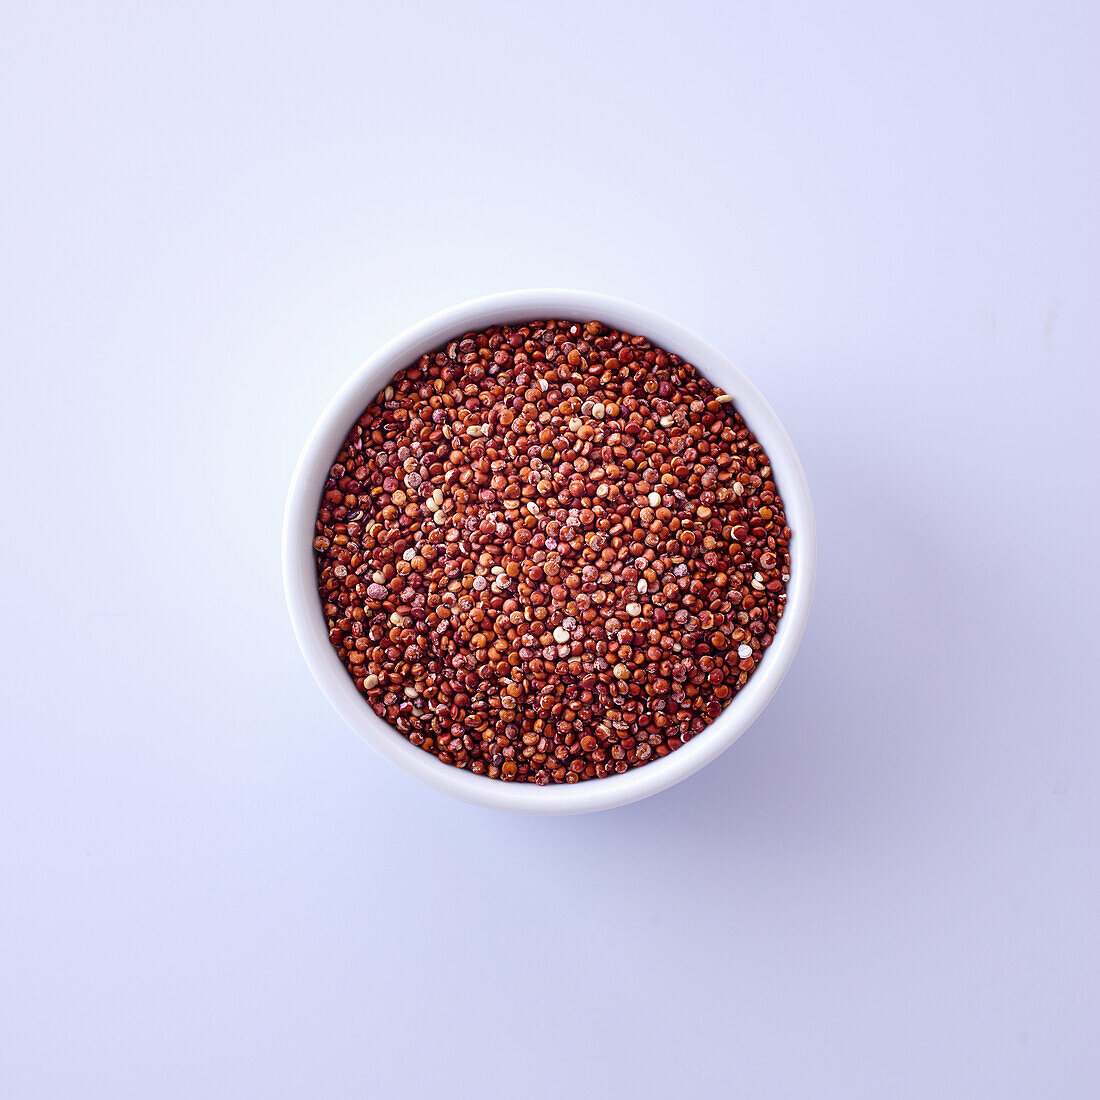 Quinoa in a dish